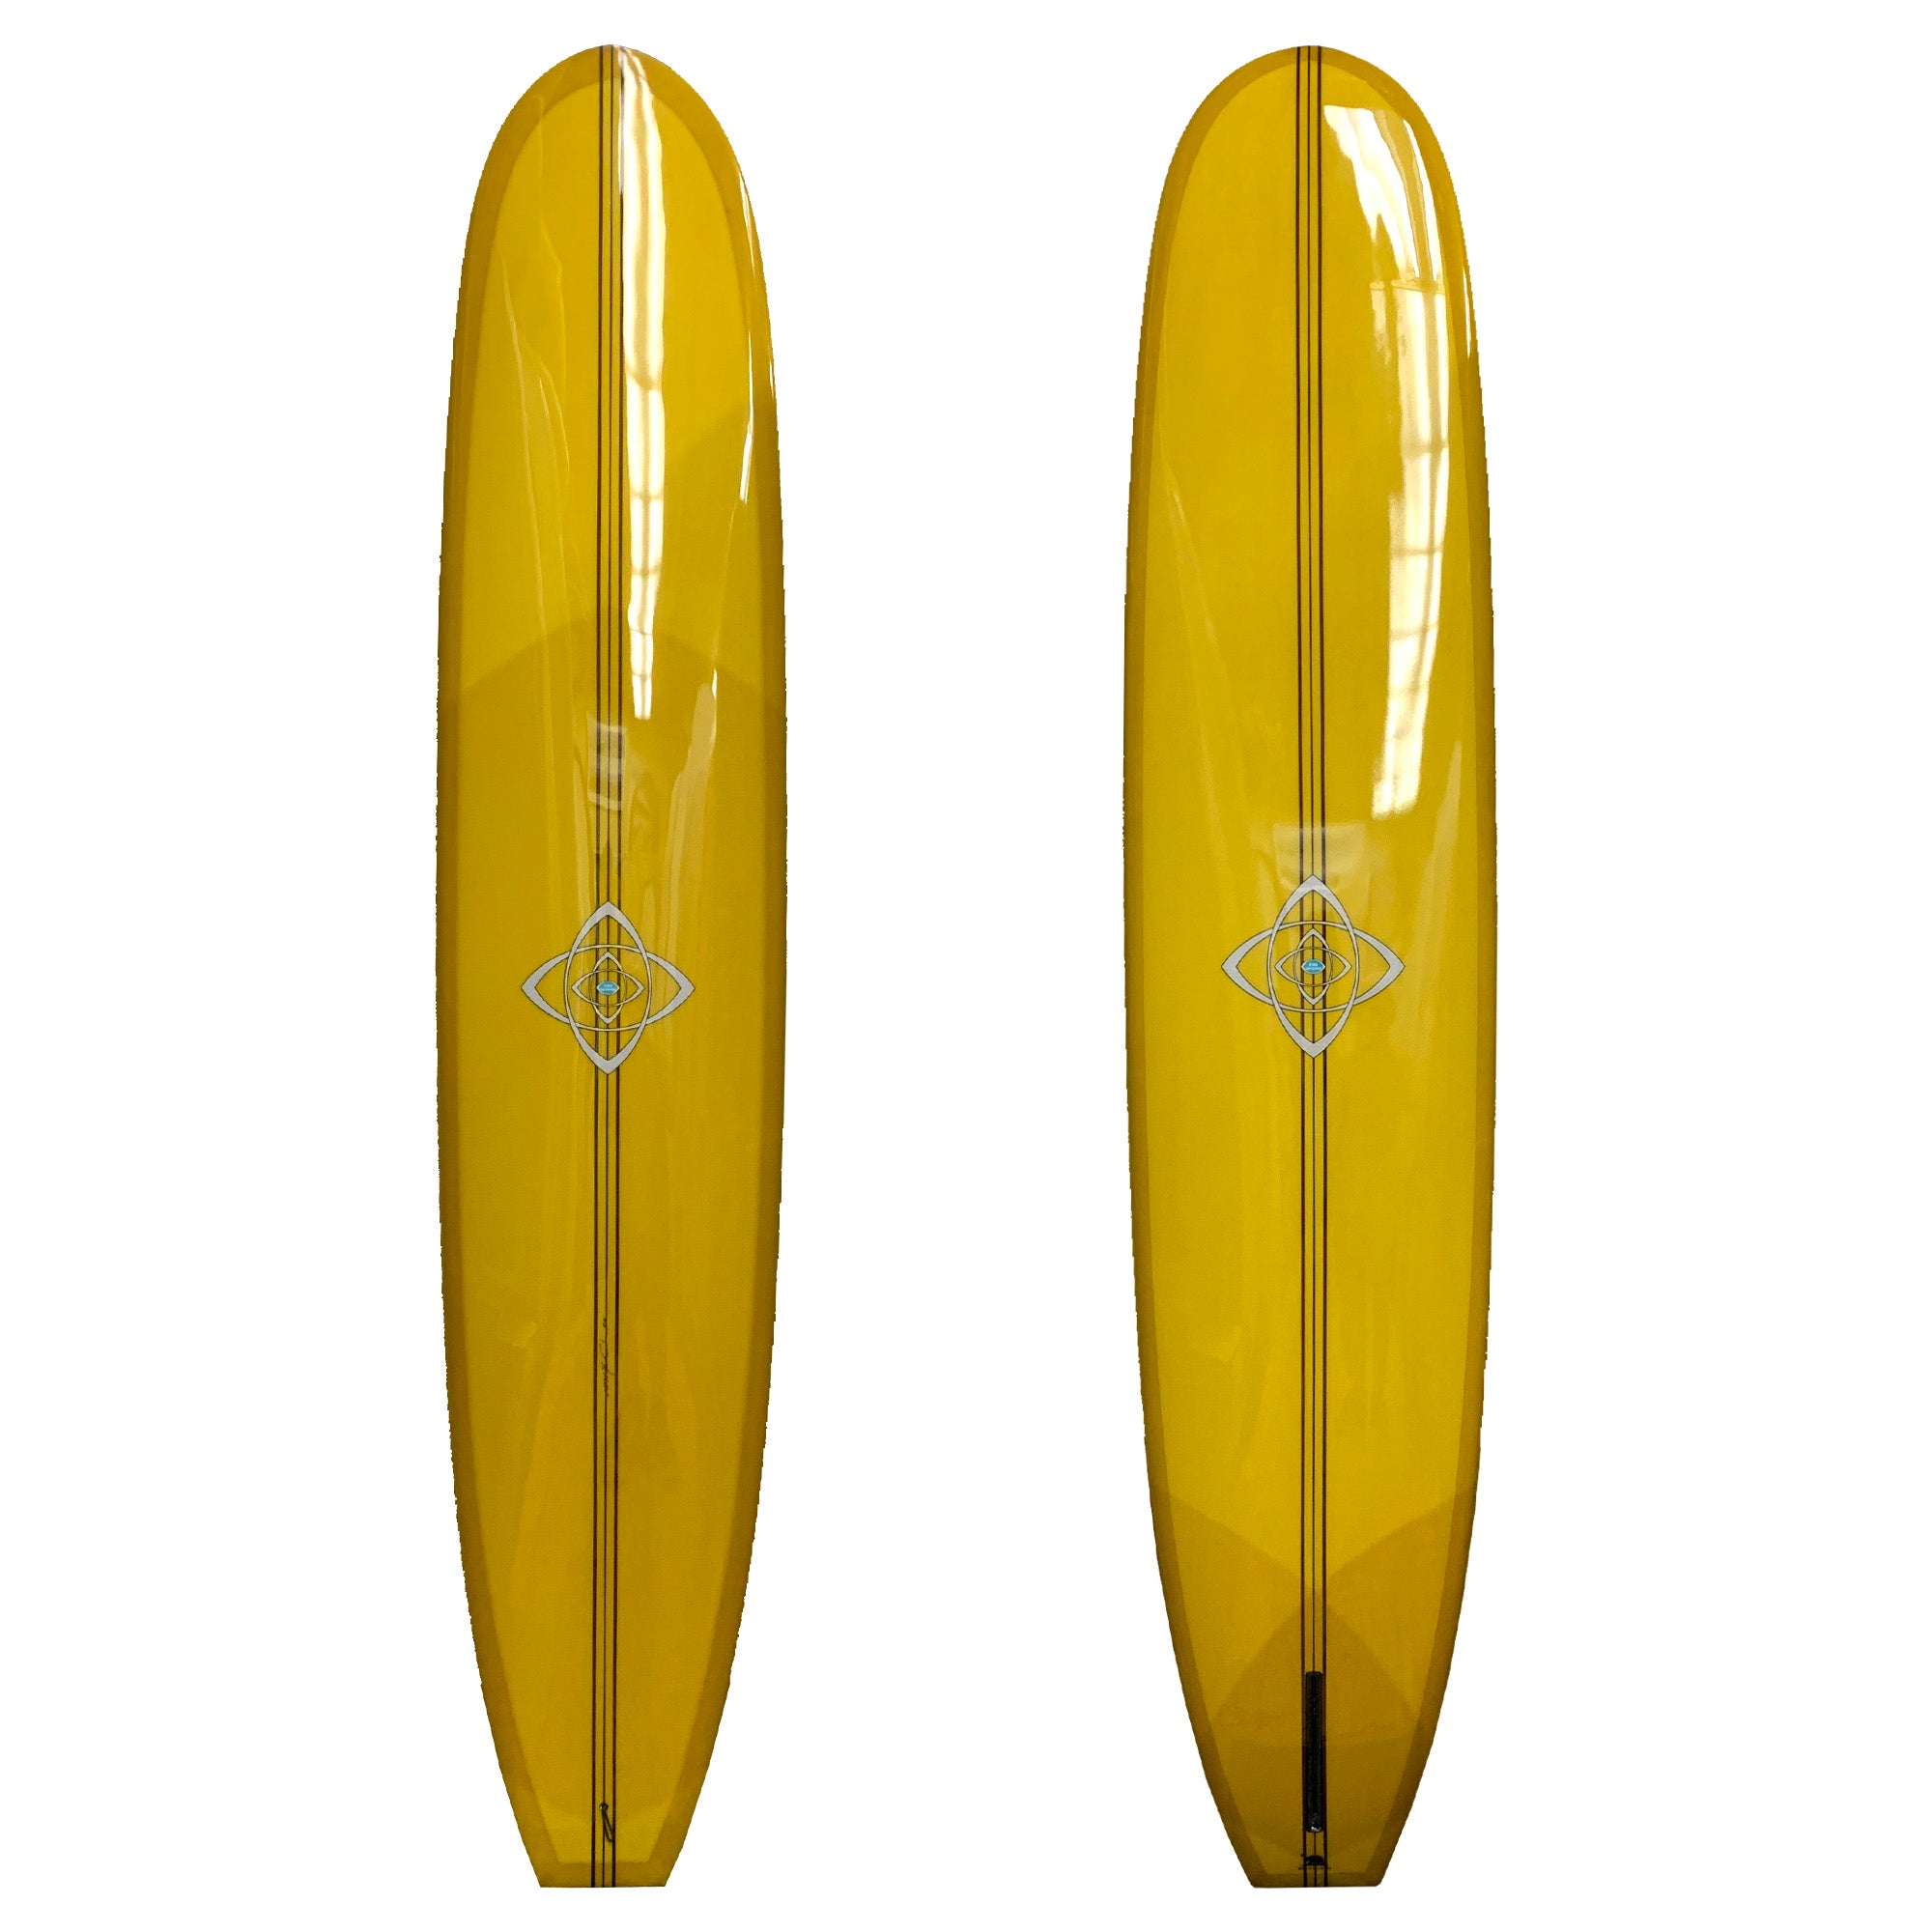 Bing Silver Spoon Surfboard